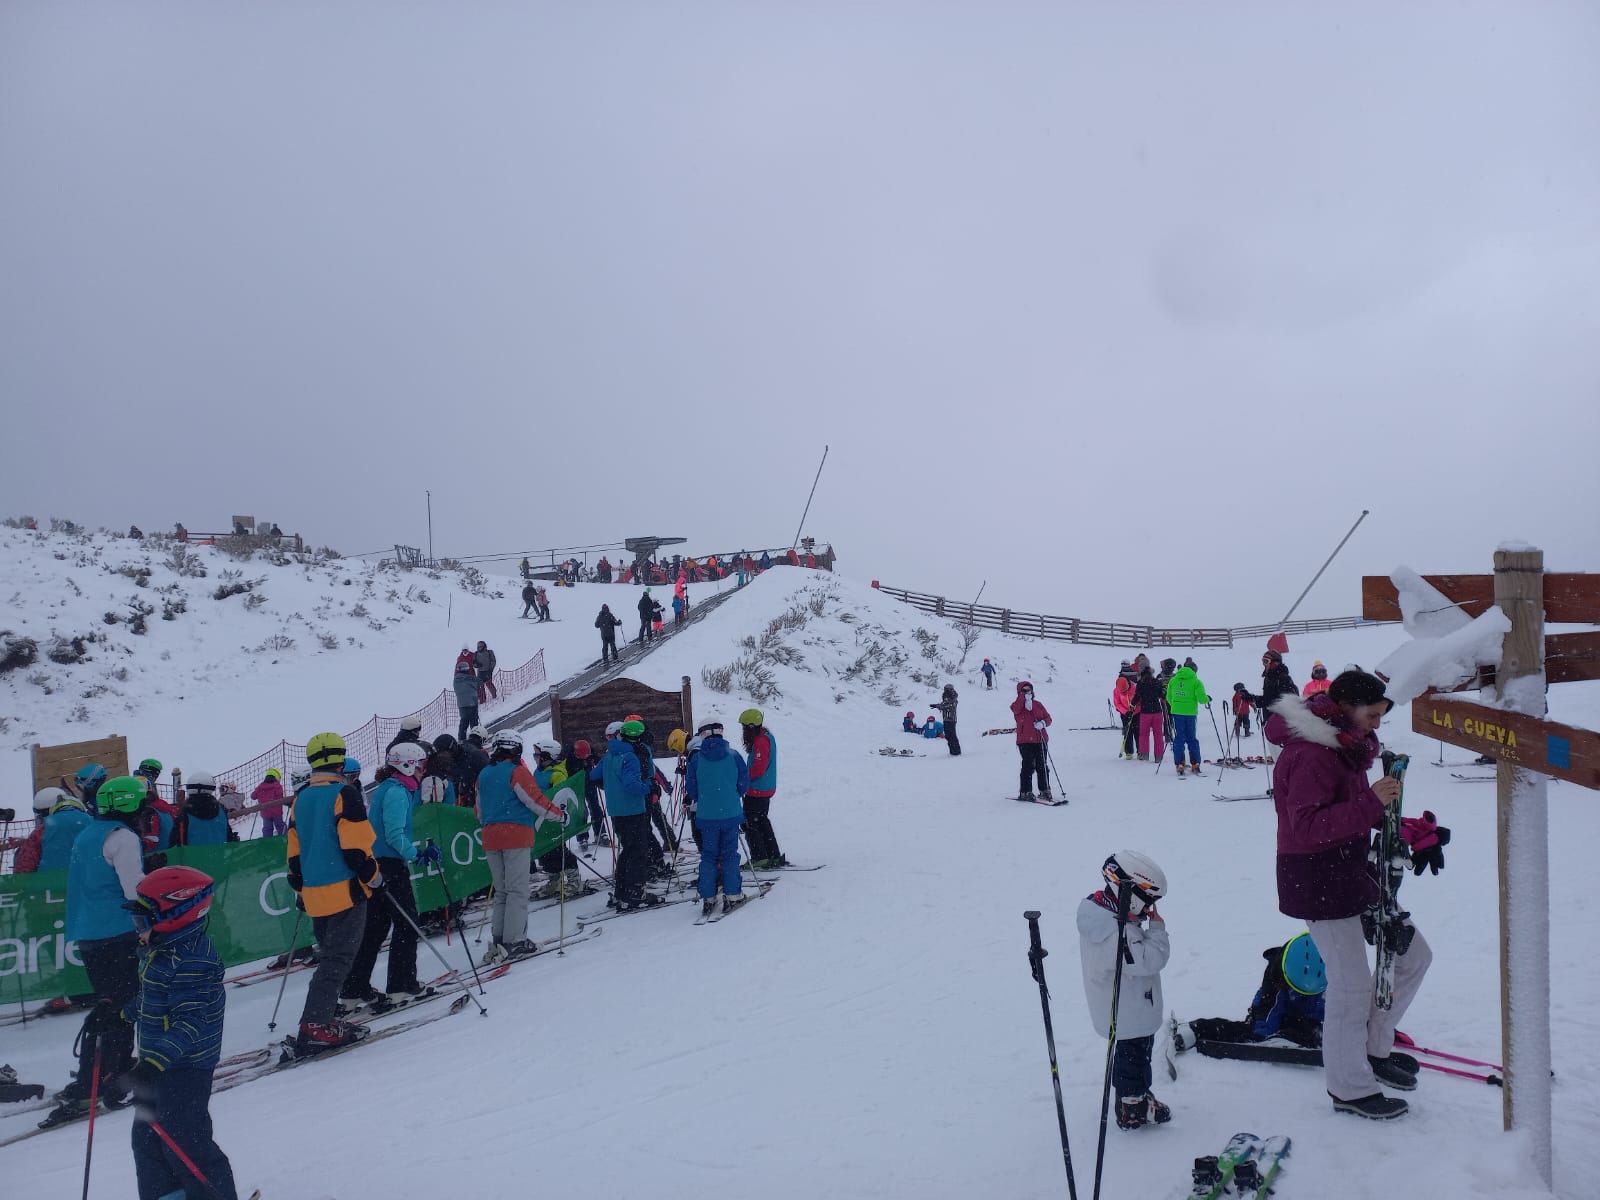 7 kilómetros esquiables para disfrutar de la nieve los días centrales de la Semana Santa 1